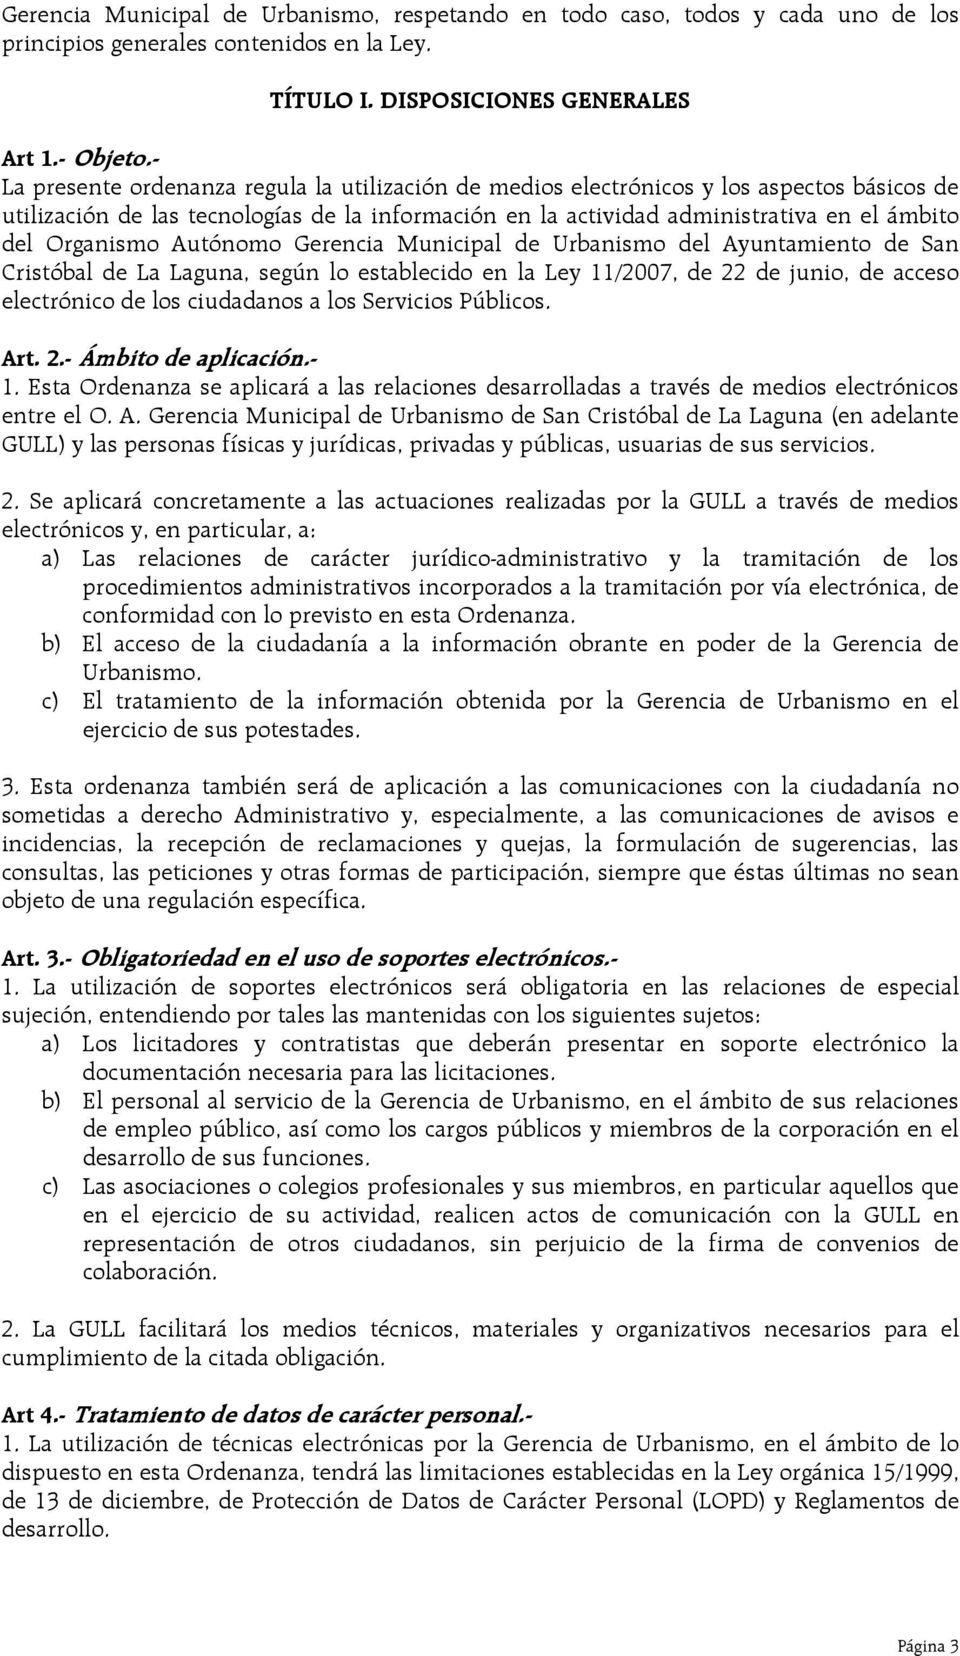 Organismo Autónomo Gerencia Municipal de Urbanismo del Ayuntamiento de San Cristóbal de La Laguna, según lo establecido en la Ley 11/2007, de 22 de junio, de acceso electrónico de los ciudadanos a